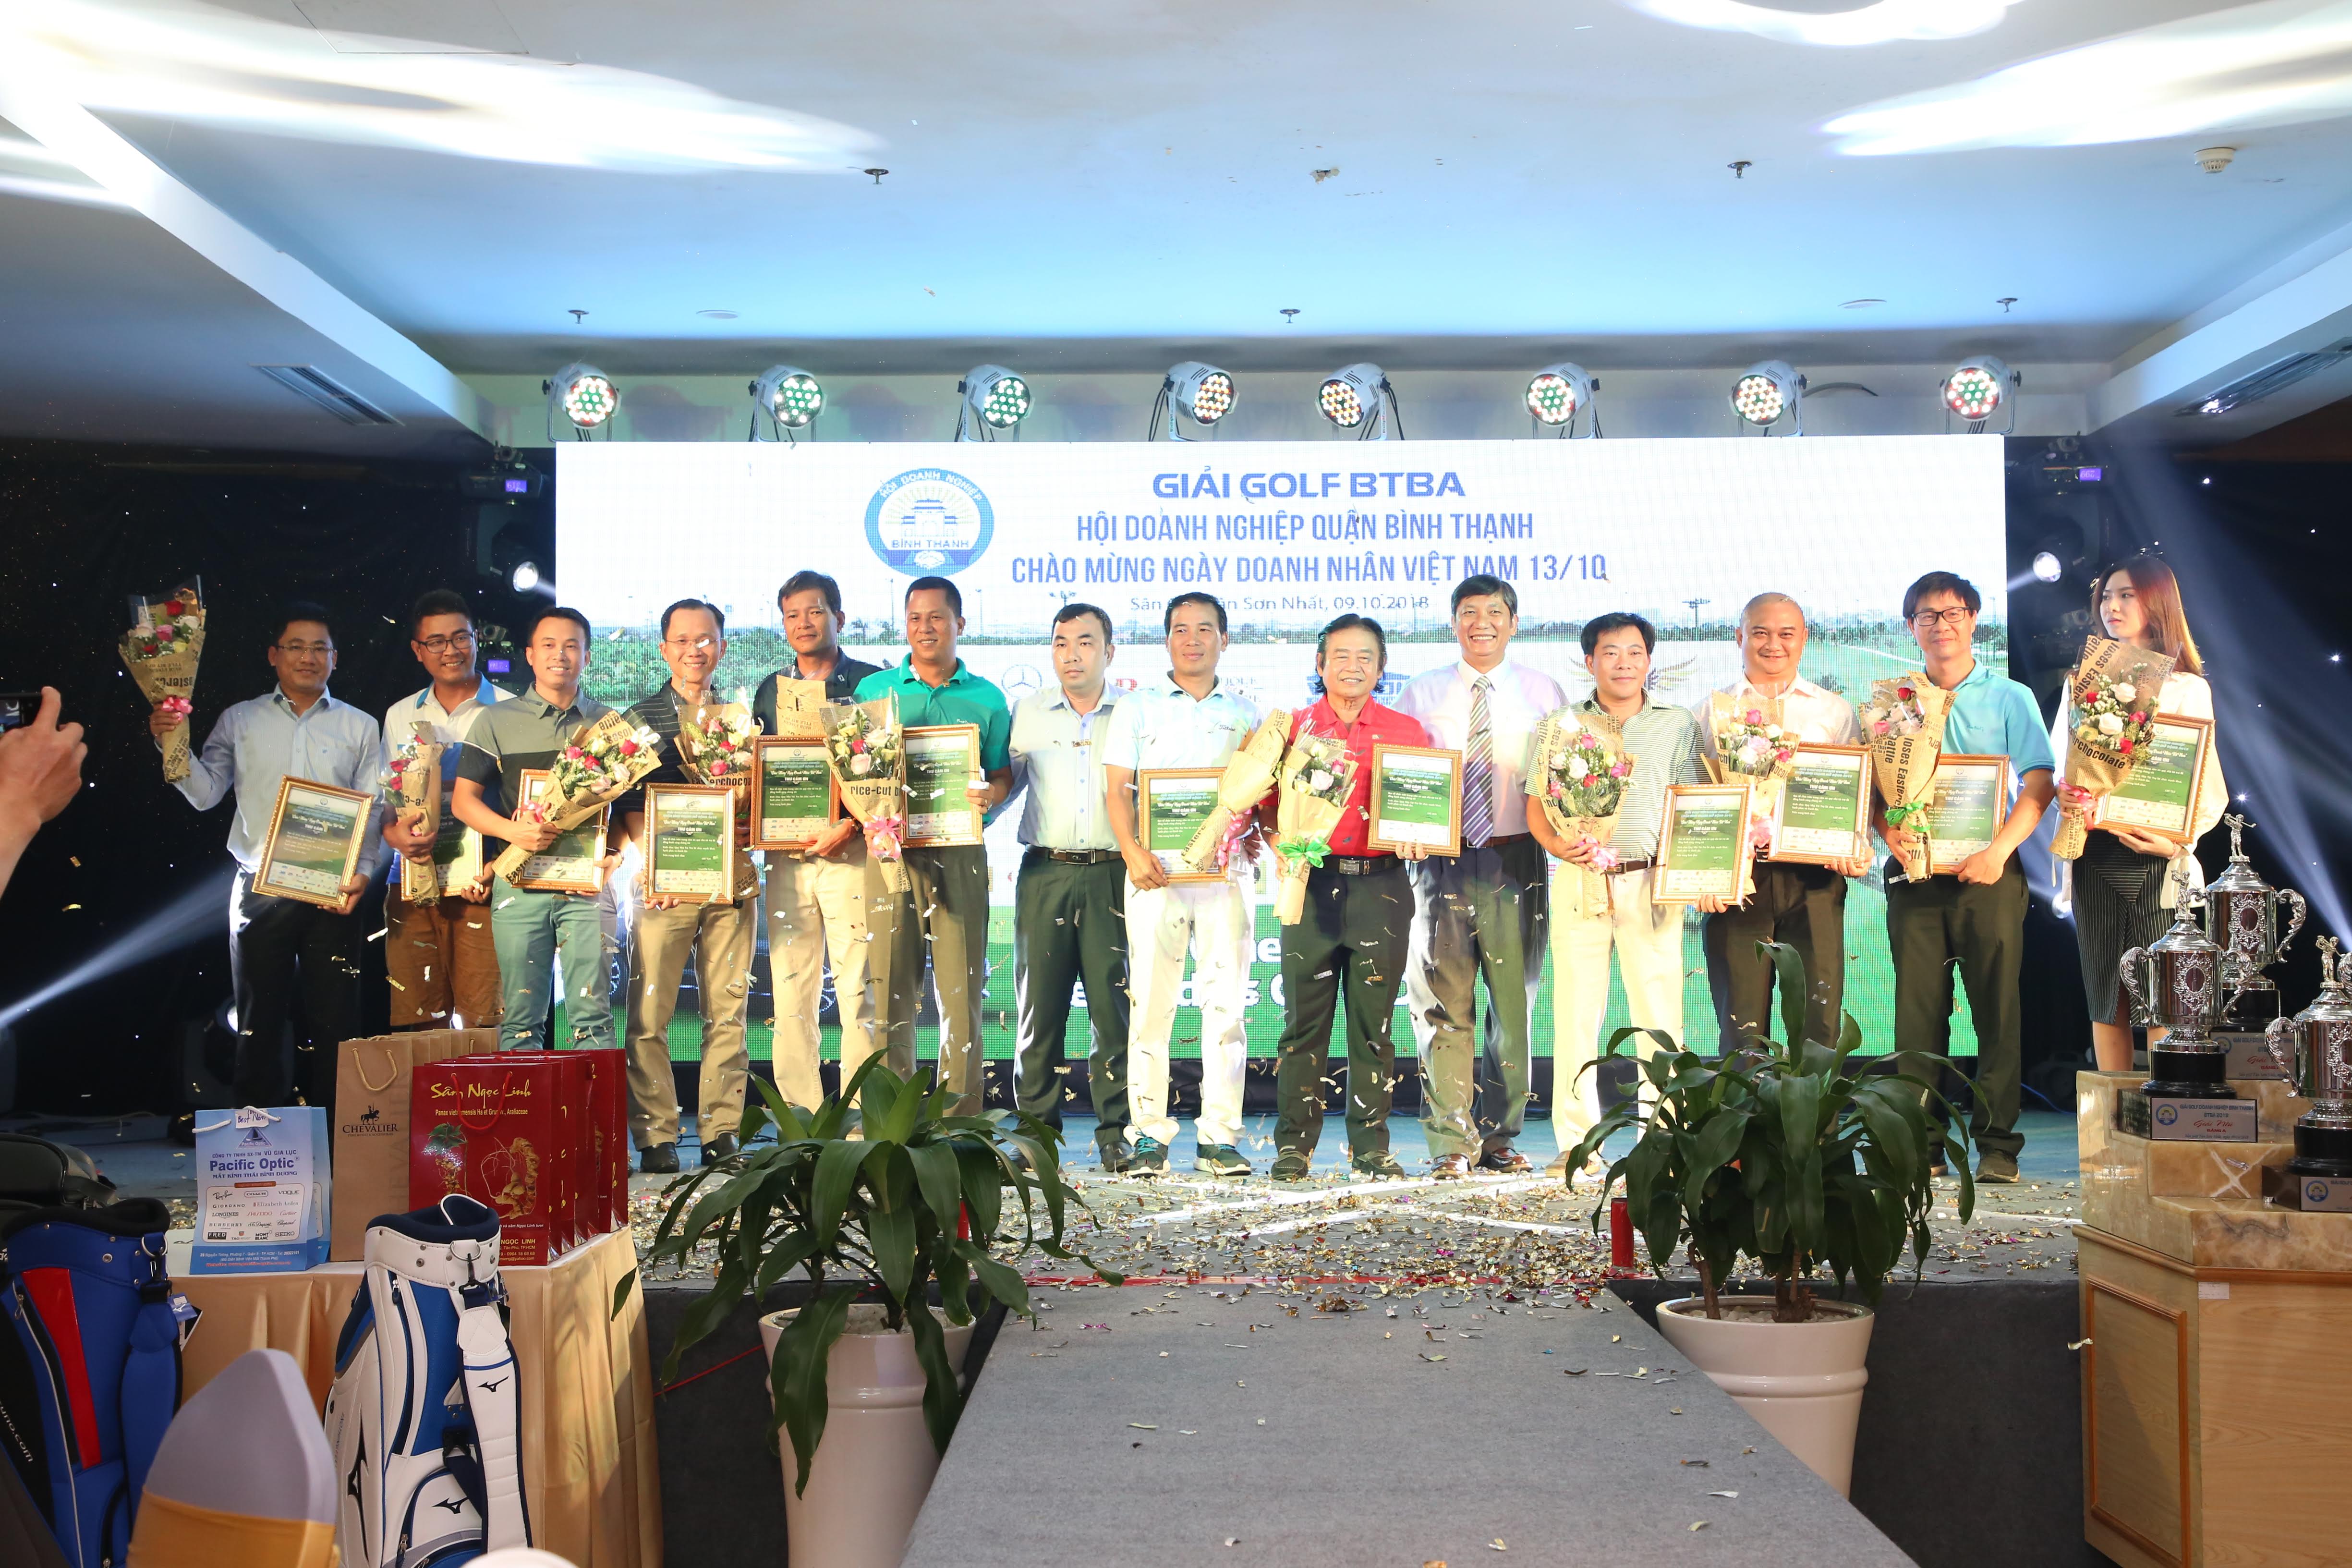 Golfer Trần Văn Hoàng giành chiến thắng tại bảng A giải golf Hội Doanh nghiệp Quận Bình Thạnh